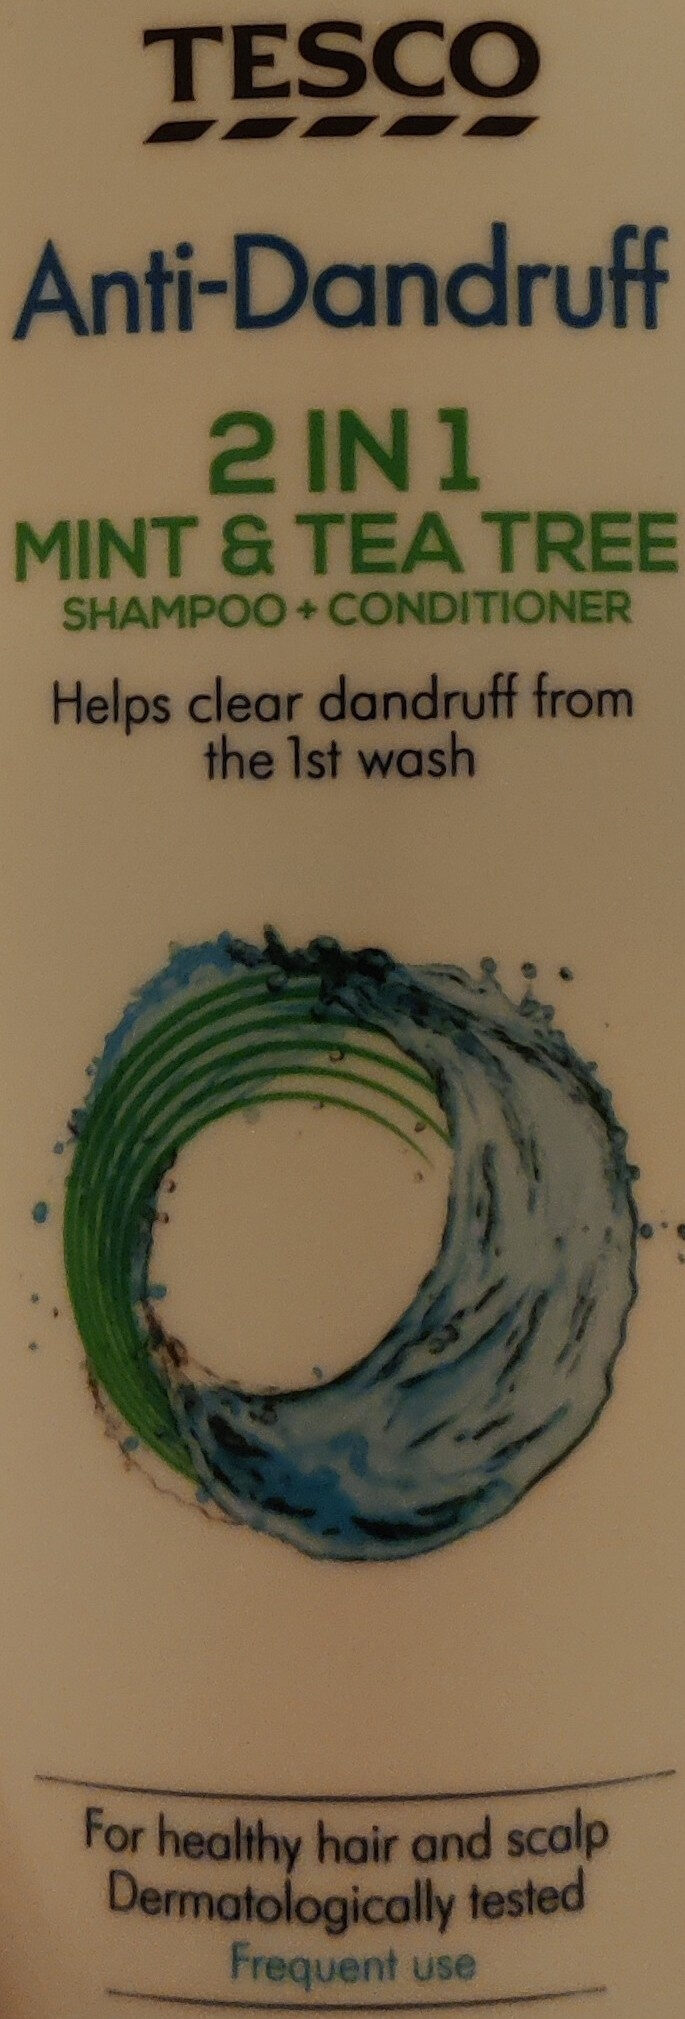 Anti-Dandruff 2 in 1 Mint & Tea Tree Shampoo + Conditioner - Produit - en